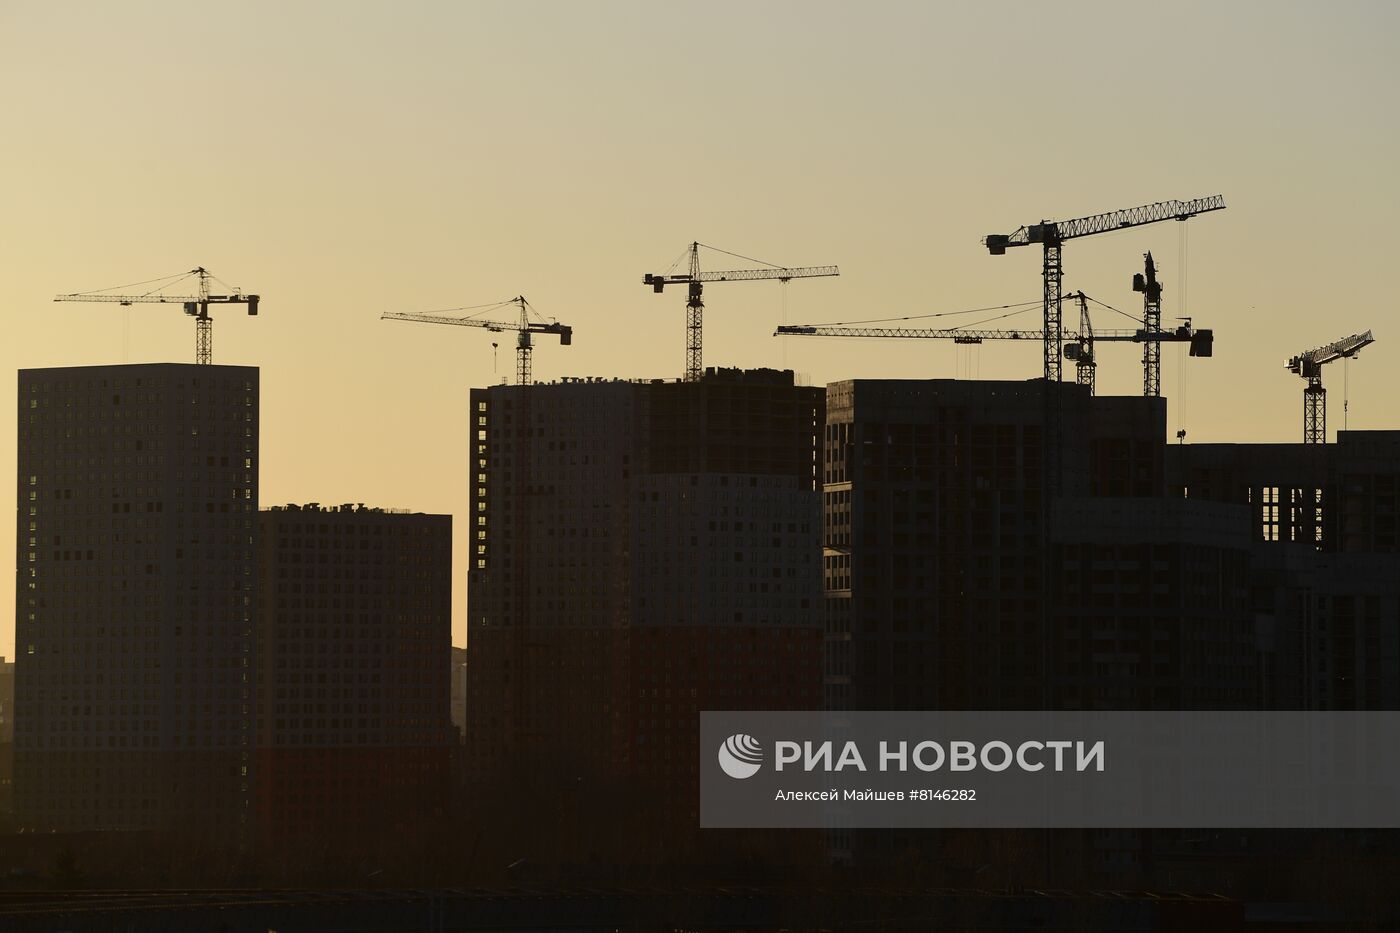 Строительство нового жилого комплекса комфорт-класса "Profit" от ГК "Гранель"